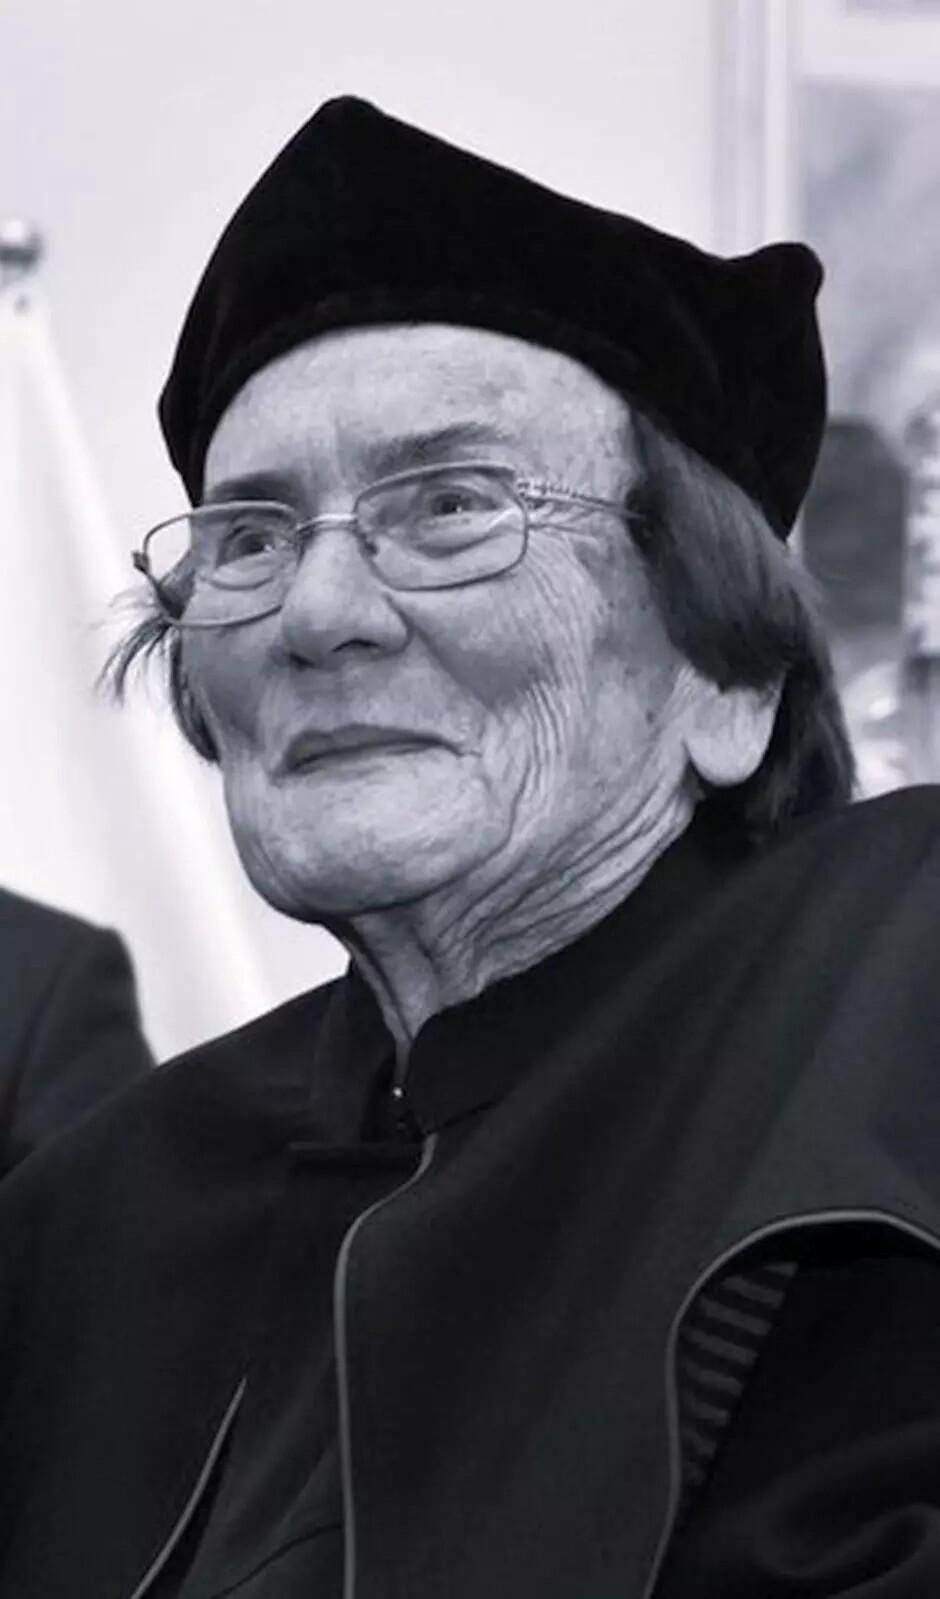 Czarno-białe zdjęcie: twarz kobiety w okularach w czapce rektorskiej na głowie 